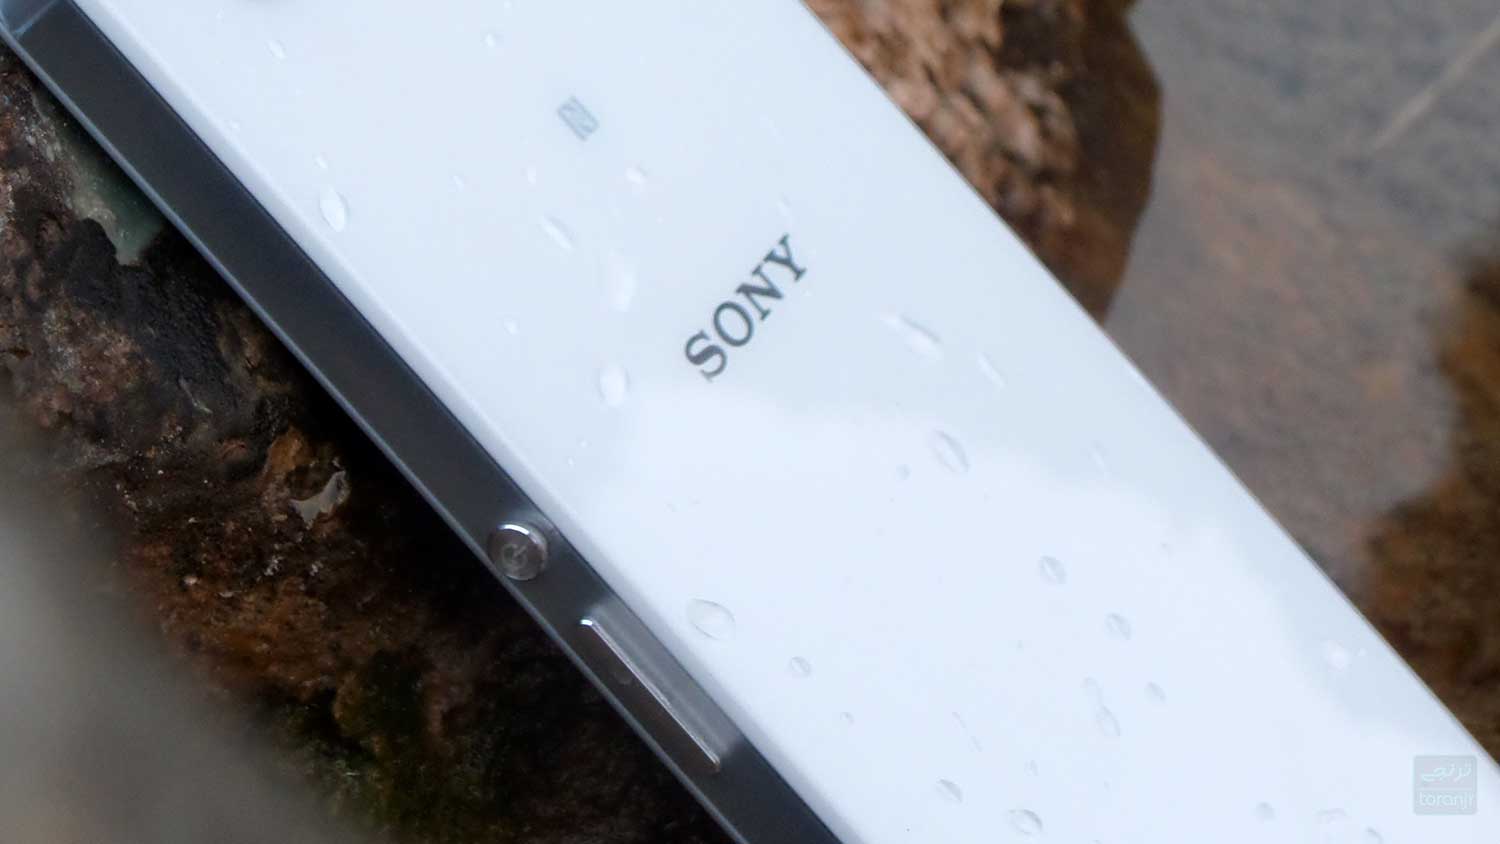 سونی اکسپریا ۱۰ مارک ۳ با Snapdragon 690 اولین گوشی اقتصادی 5G این برند خواهد بود